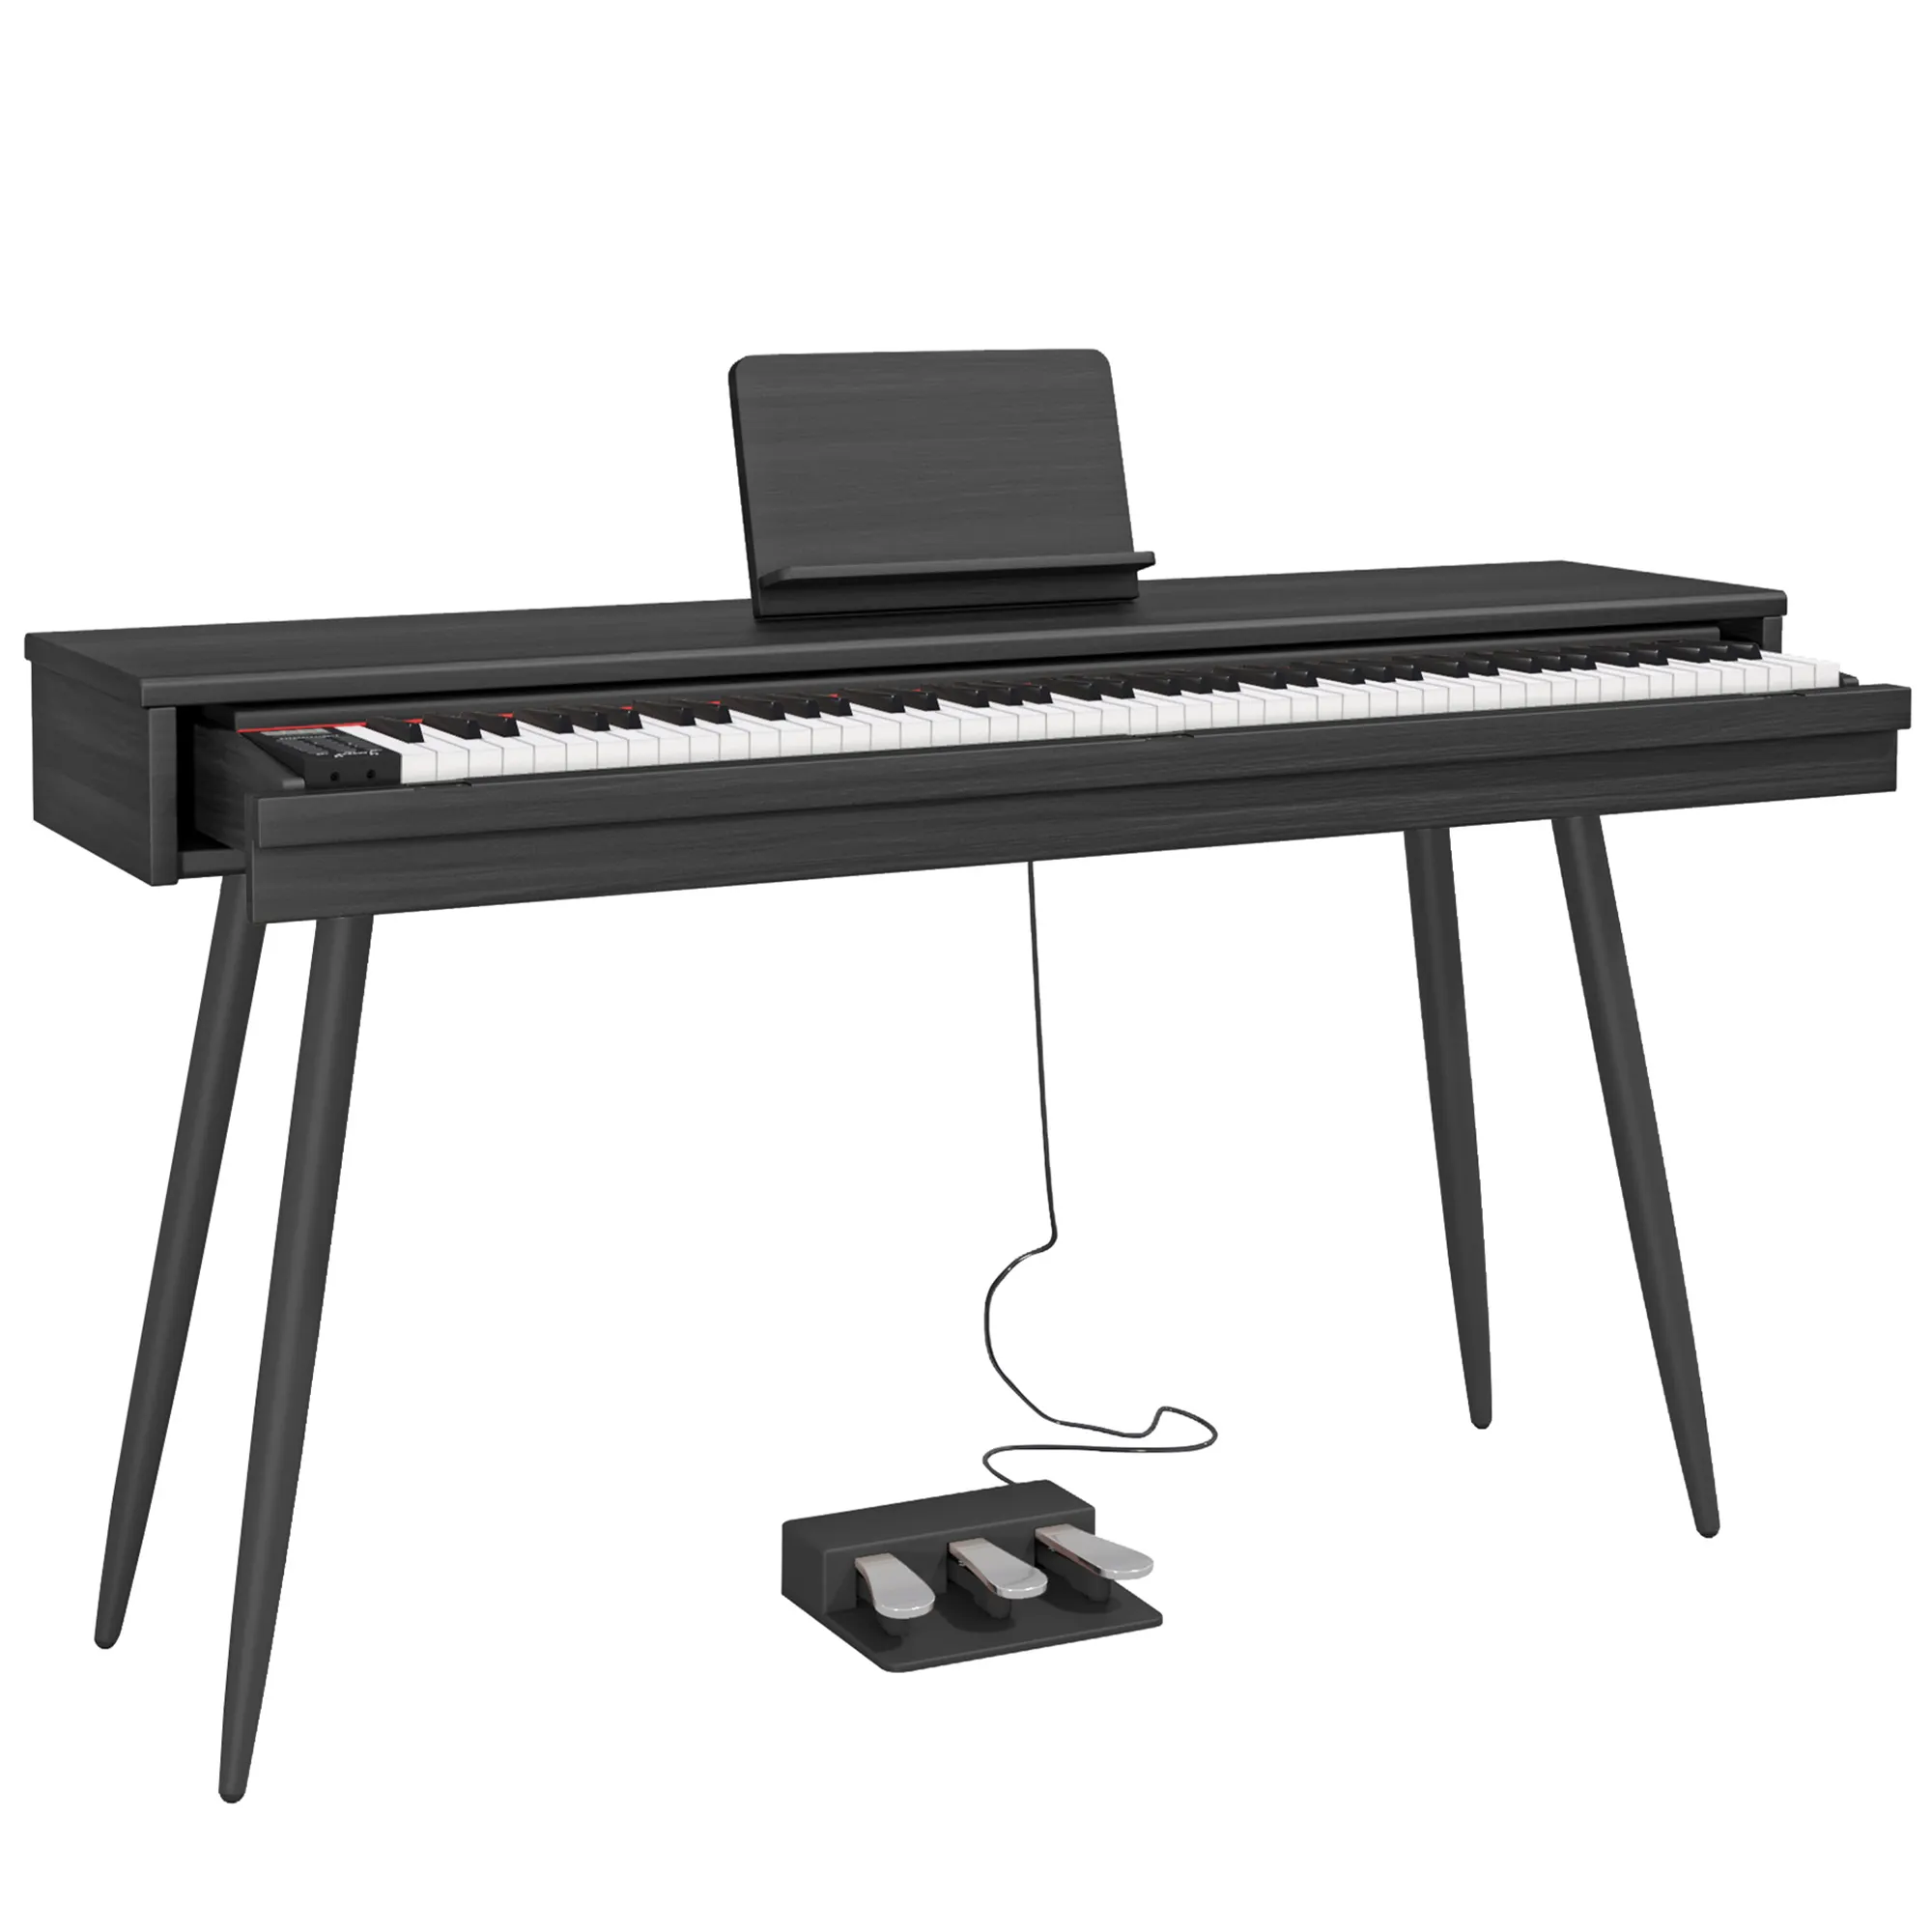 BLANTH Cajón piano teclado Piano Electrónico piano digital piano eléctrico instrumentos musicales